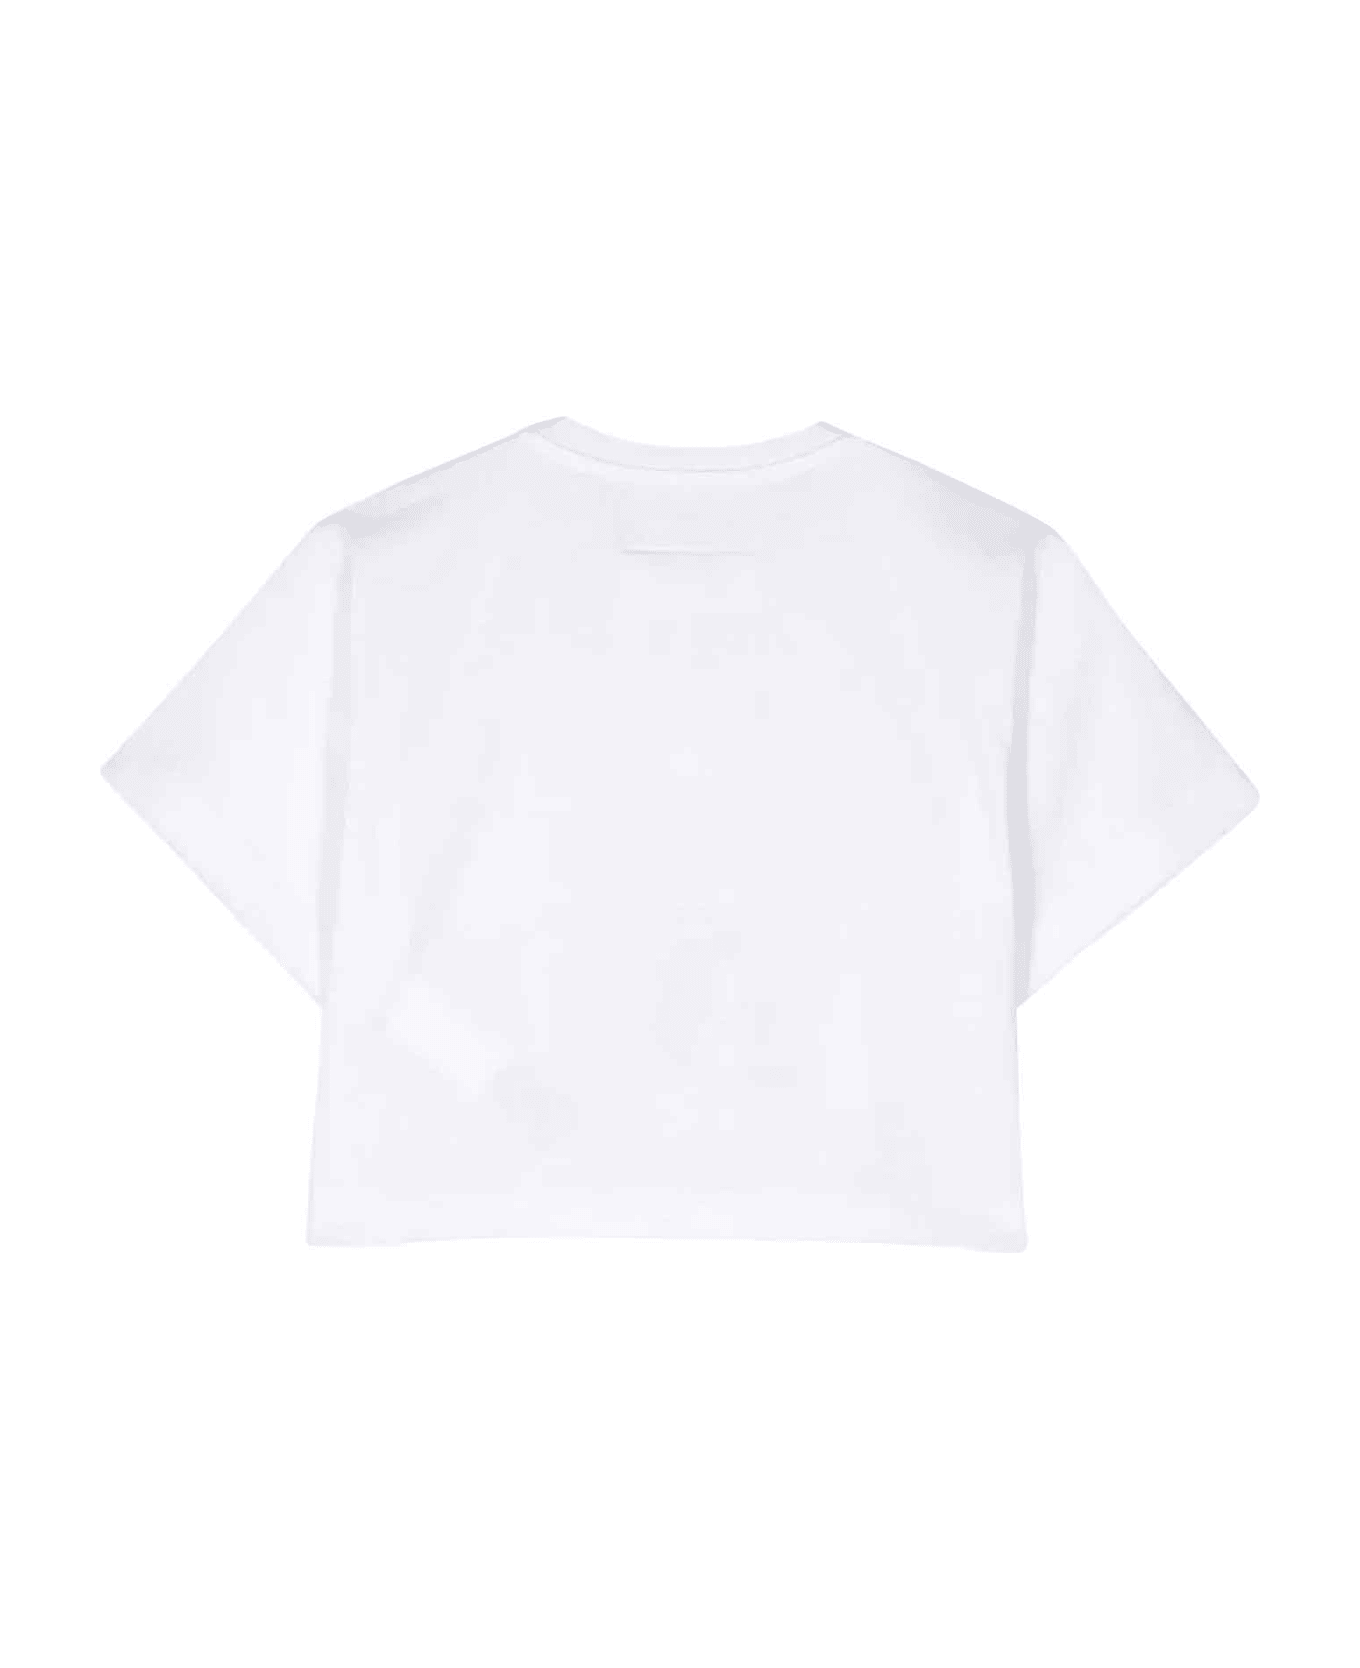 MM6 Maison Margiela White T-shirt Unisex - Bianco